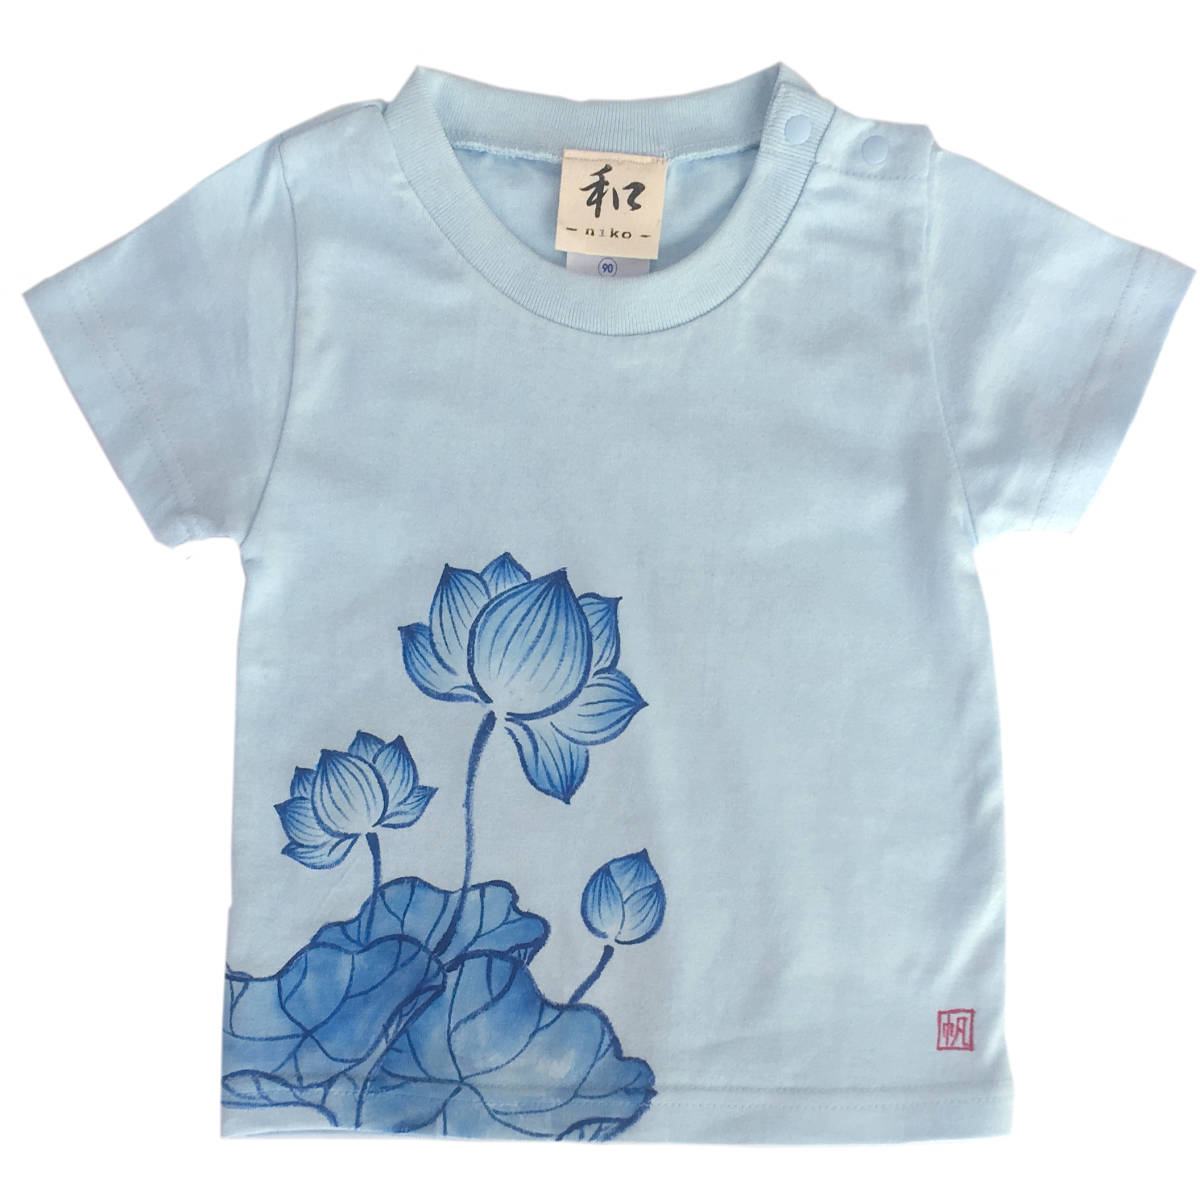 बच्चों की टी-शर्ट, आकार 140, नीला कमल पैटर्न टी-शर्ट, हाथ से तैयार कमल के फूल का पैटर्न टी-शर्ट, आधी बाजू, जापानी पैटर्न, जापानी शैली में, रेट्रो, हस्तनिर्मित, सबसे ऊपर, छोटी आस्तीन वाली टी-शर्ट, 140(135~144सेमी)